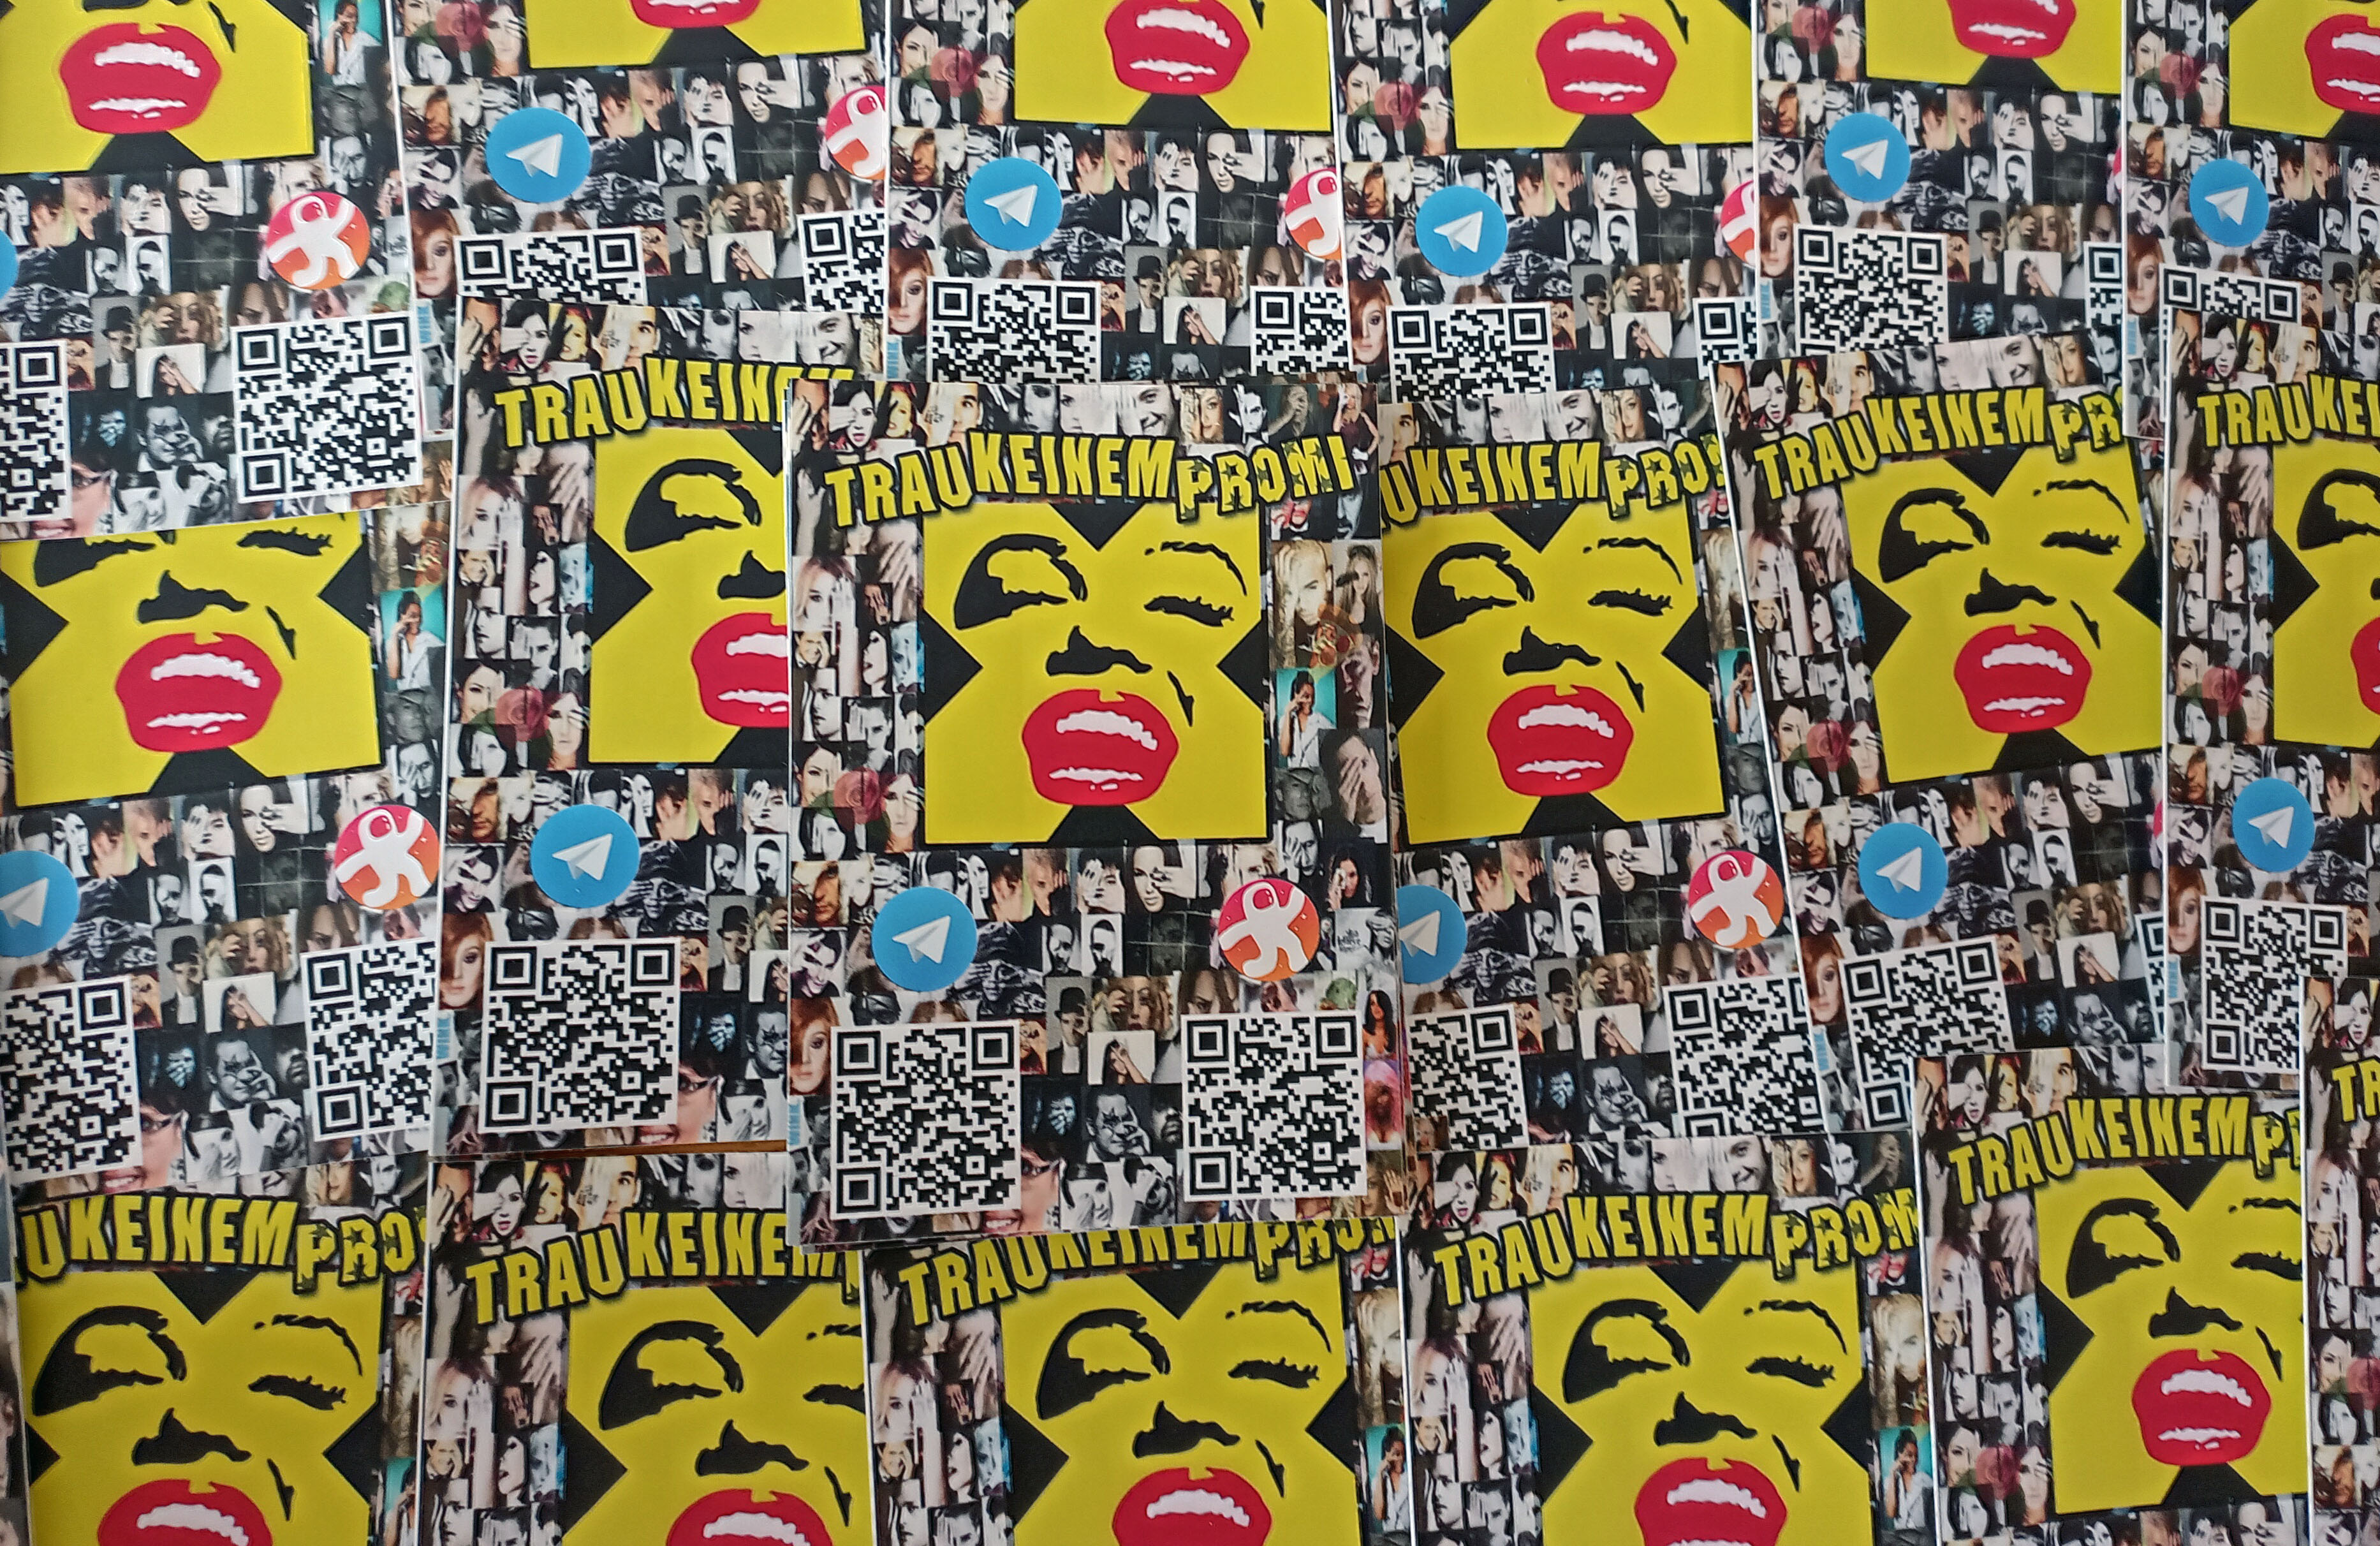 TrauKeinemPromi QR Code Sticker Collage